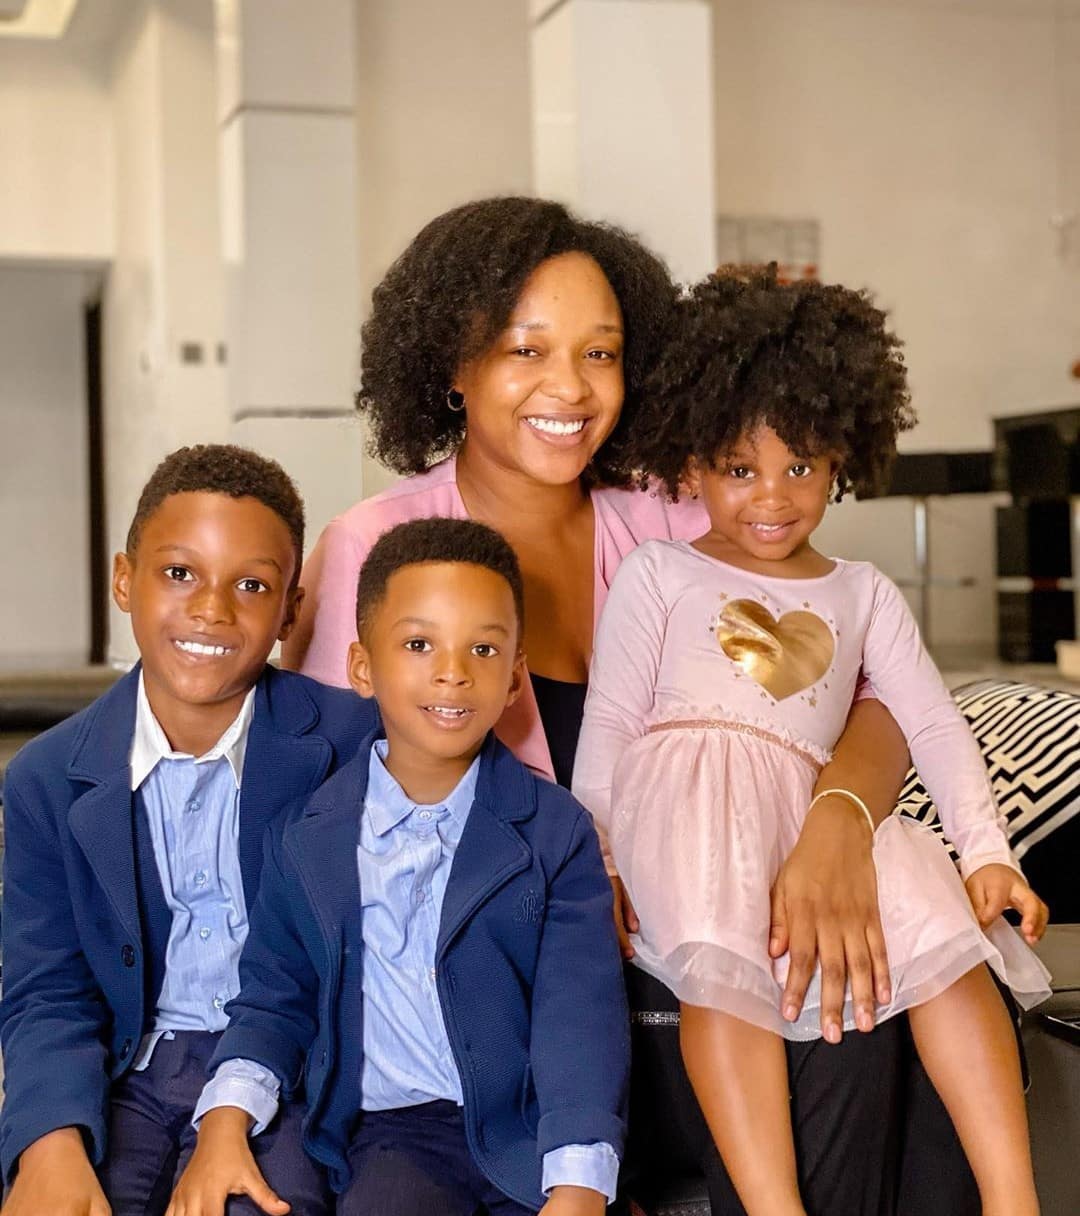 Paul Okoye's wife, Anita Celebrates 'International Family Day' With Her Kids (Photos)